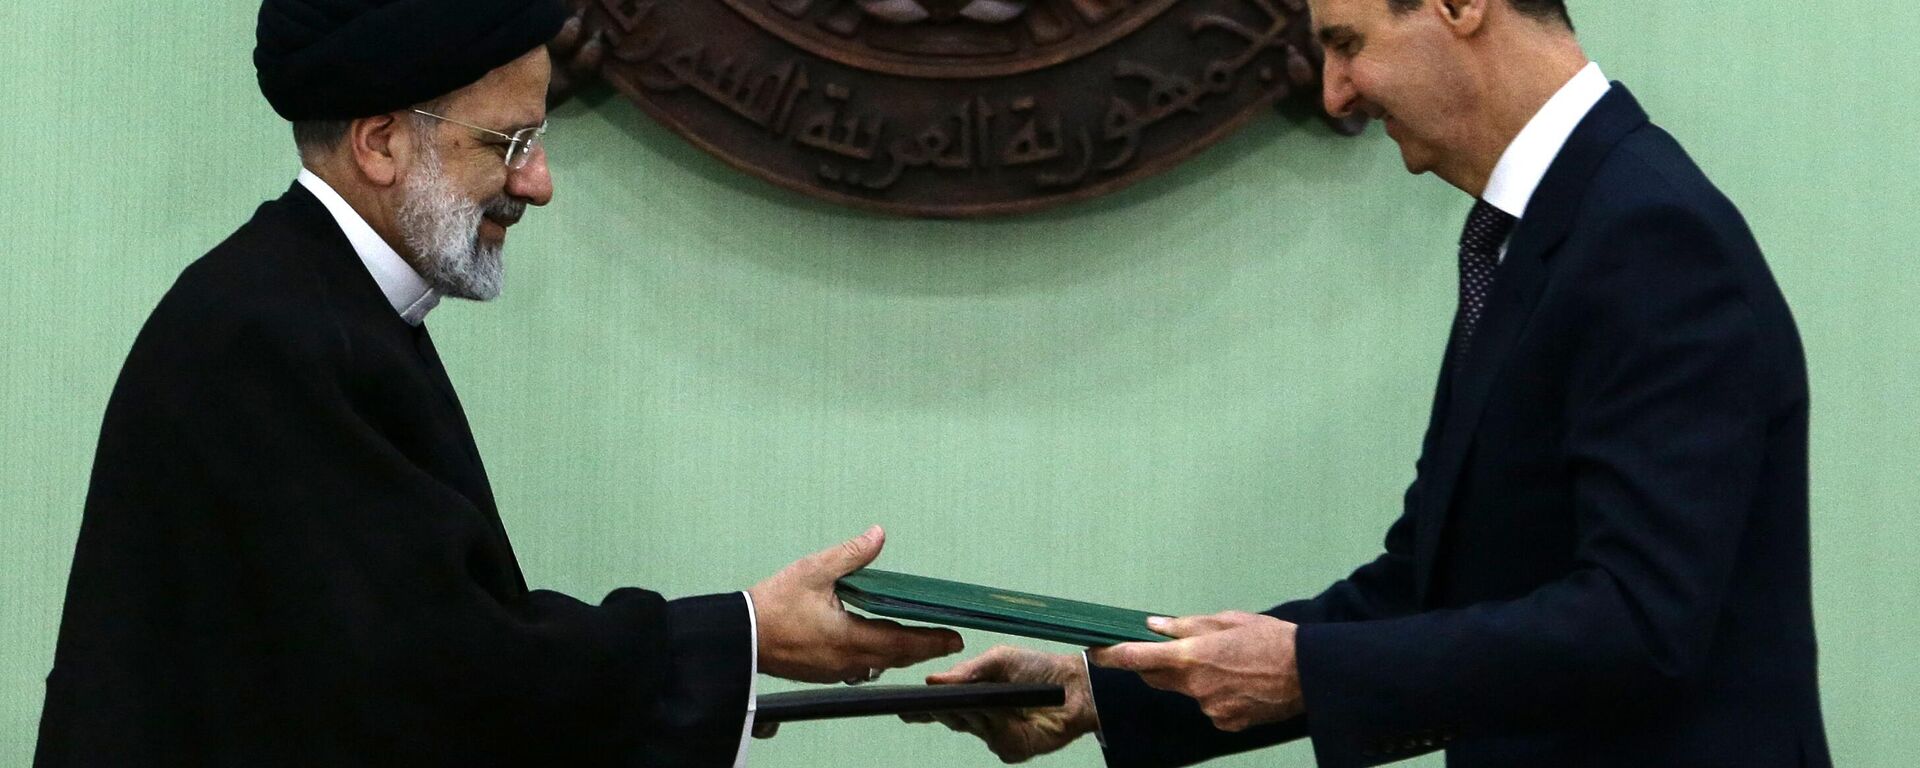 O presidente da Síria, Bashar al-Assad (à direita), e seu colega iraniano, Ebrahim Raisi, trocam documentos após assinarem um memorando de entendimento sobre cooperação estratégica de longo prazo em Damasco, em 3 de maio de 2023 - Sputnik Brasil, 1920, 03.05.2023